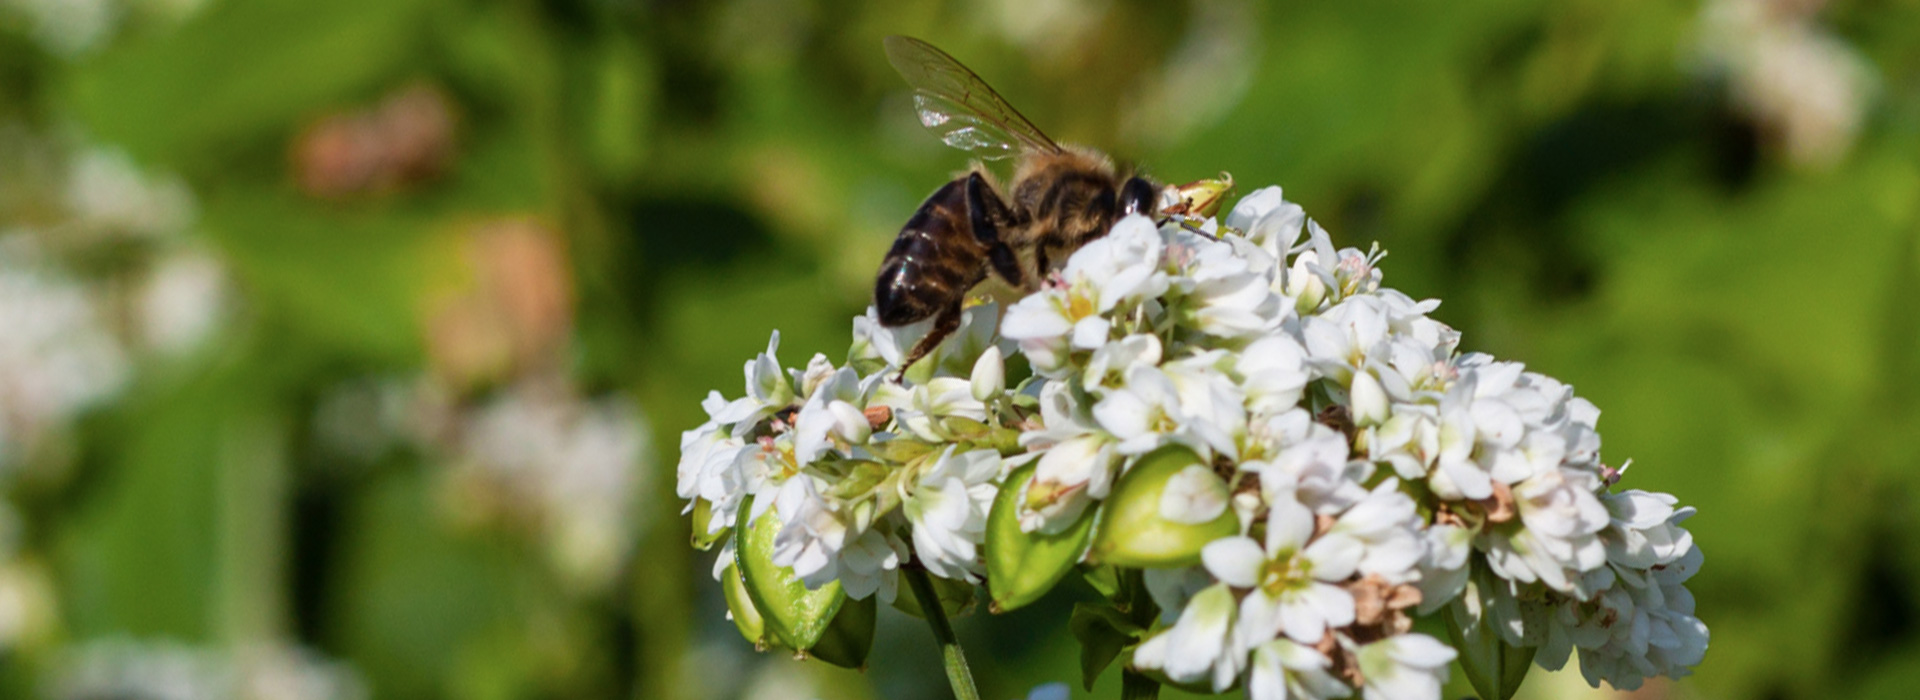 Buchweizen - Der Biene zuliebe